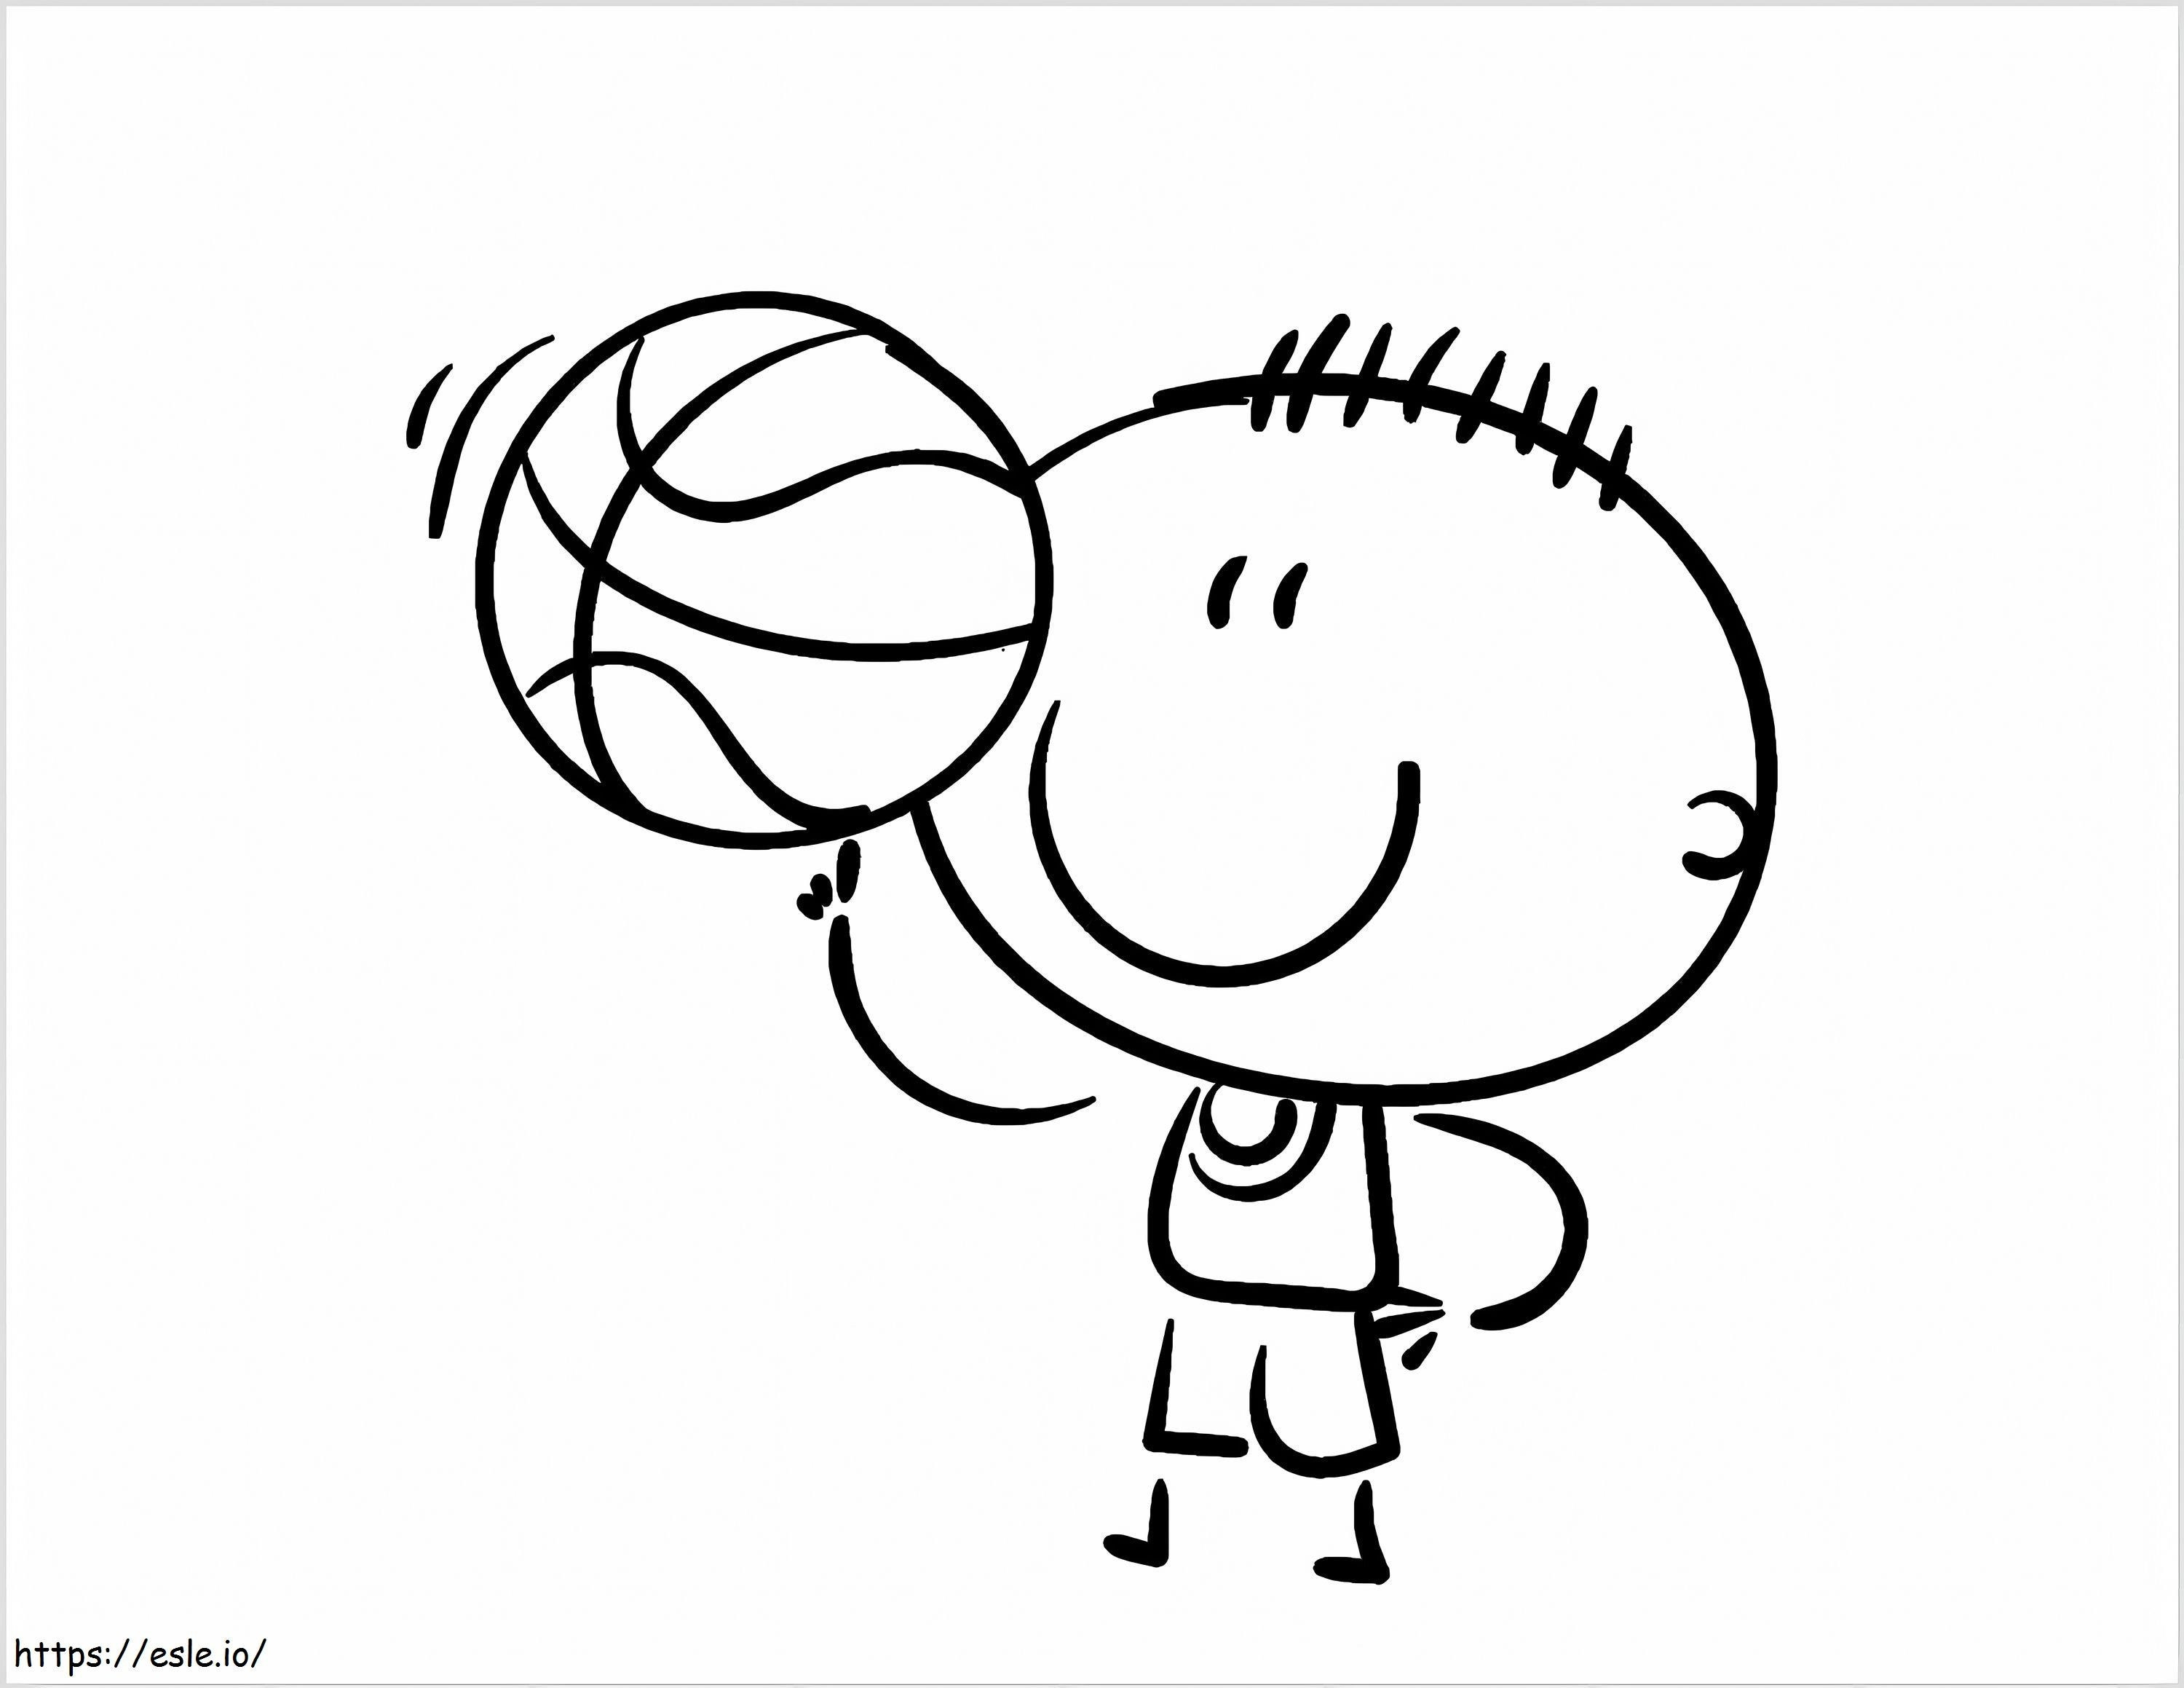 Dönen Basketbol boyama